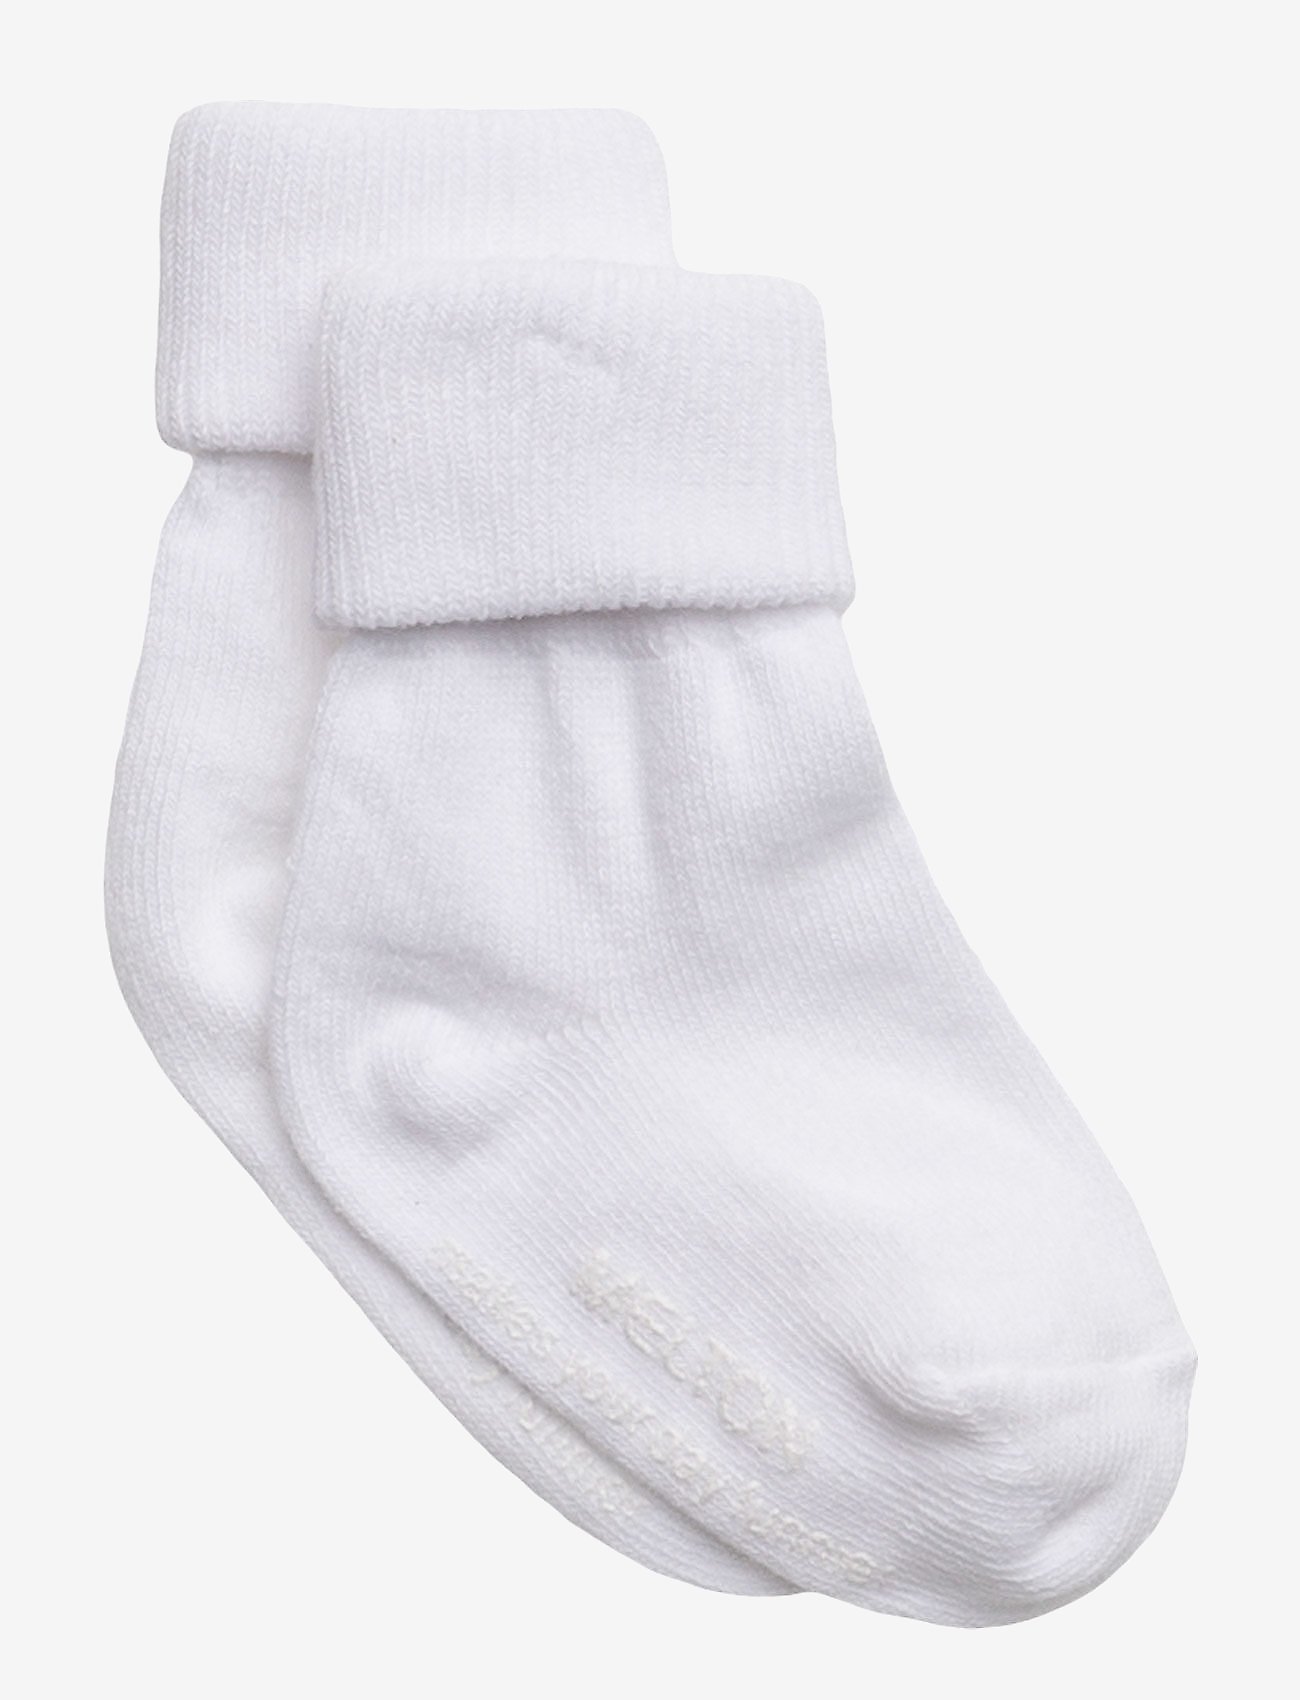 Melton - Cotton socks - anti-slip - lowest prices - 100/white - 0